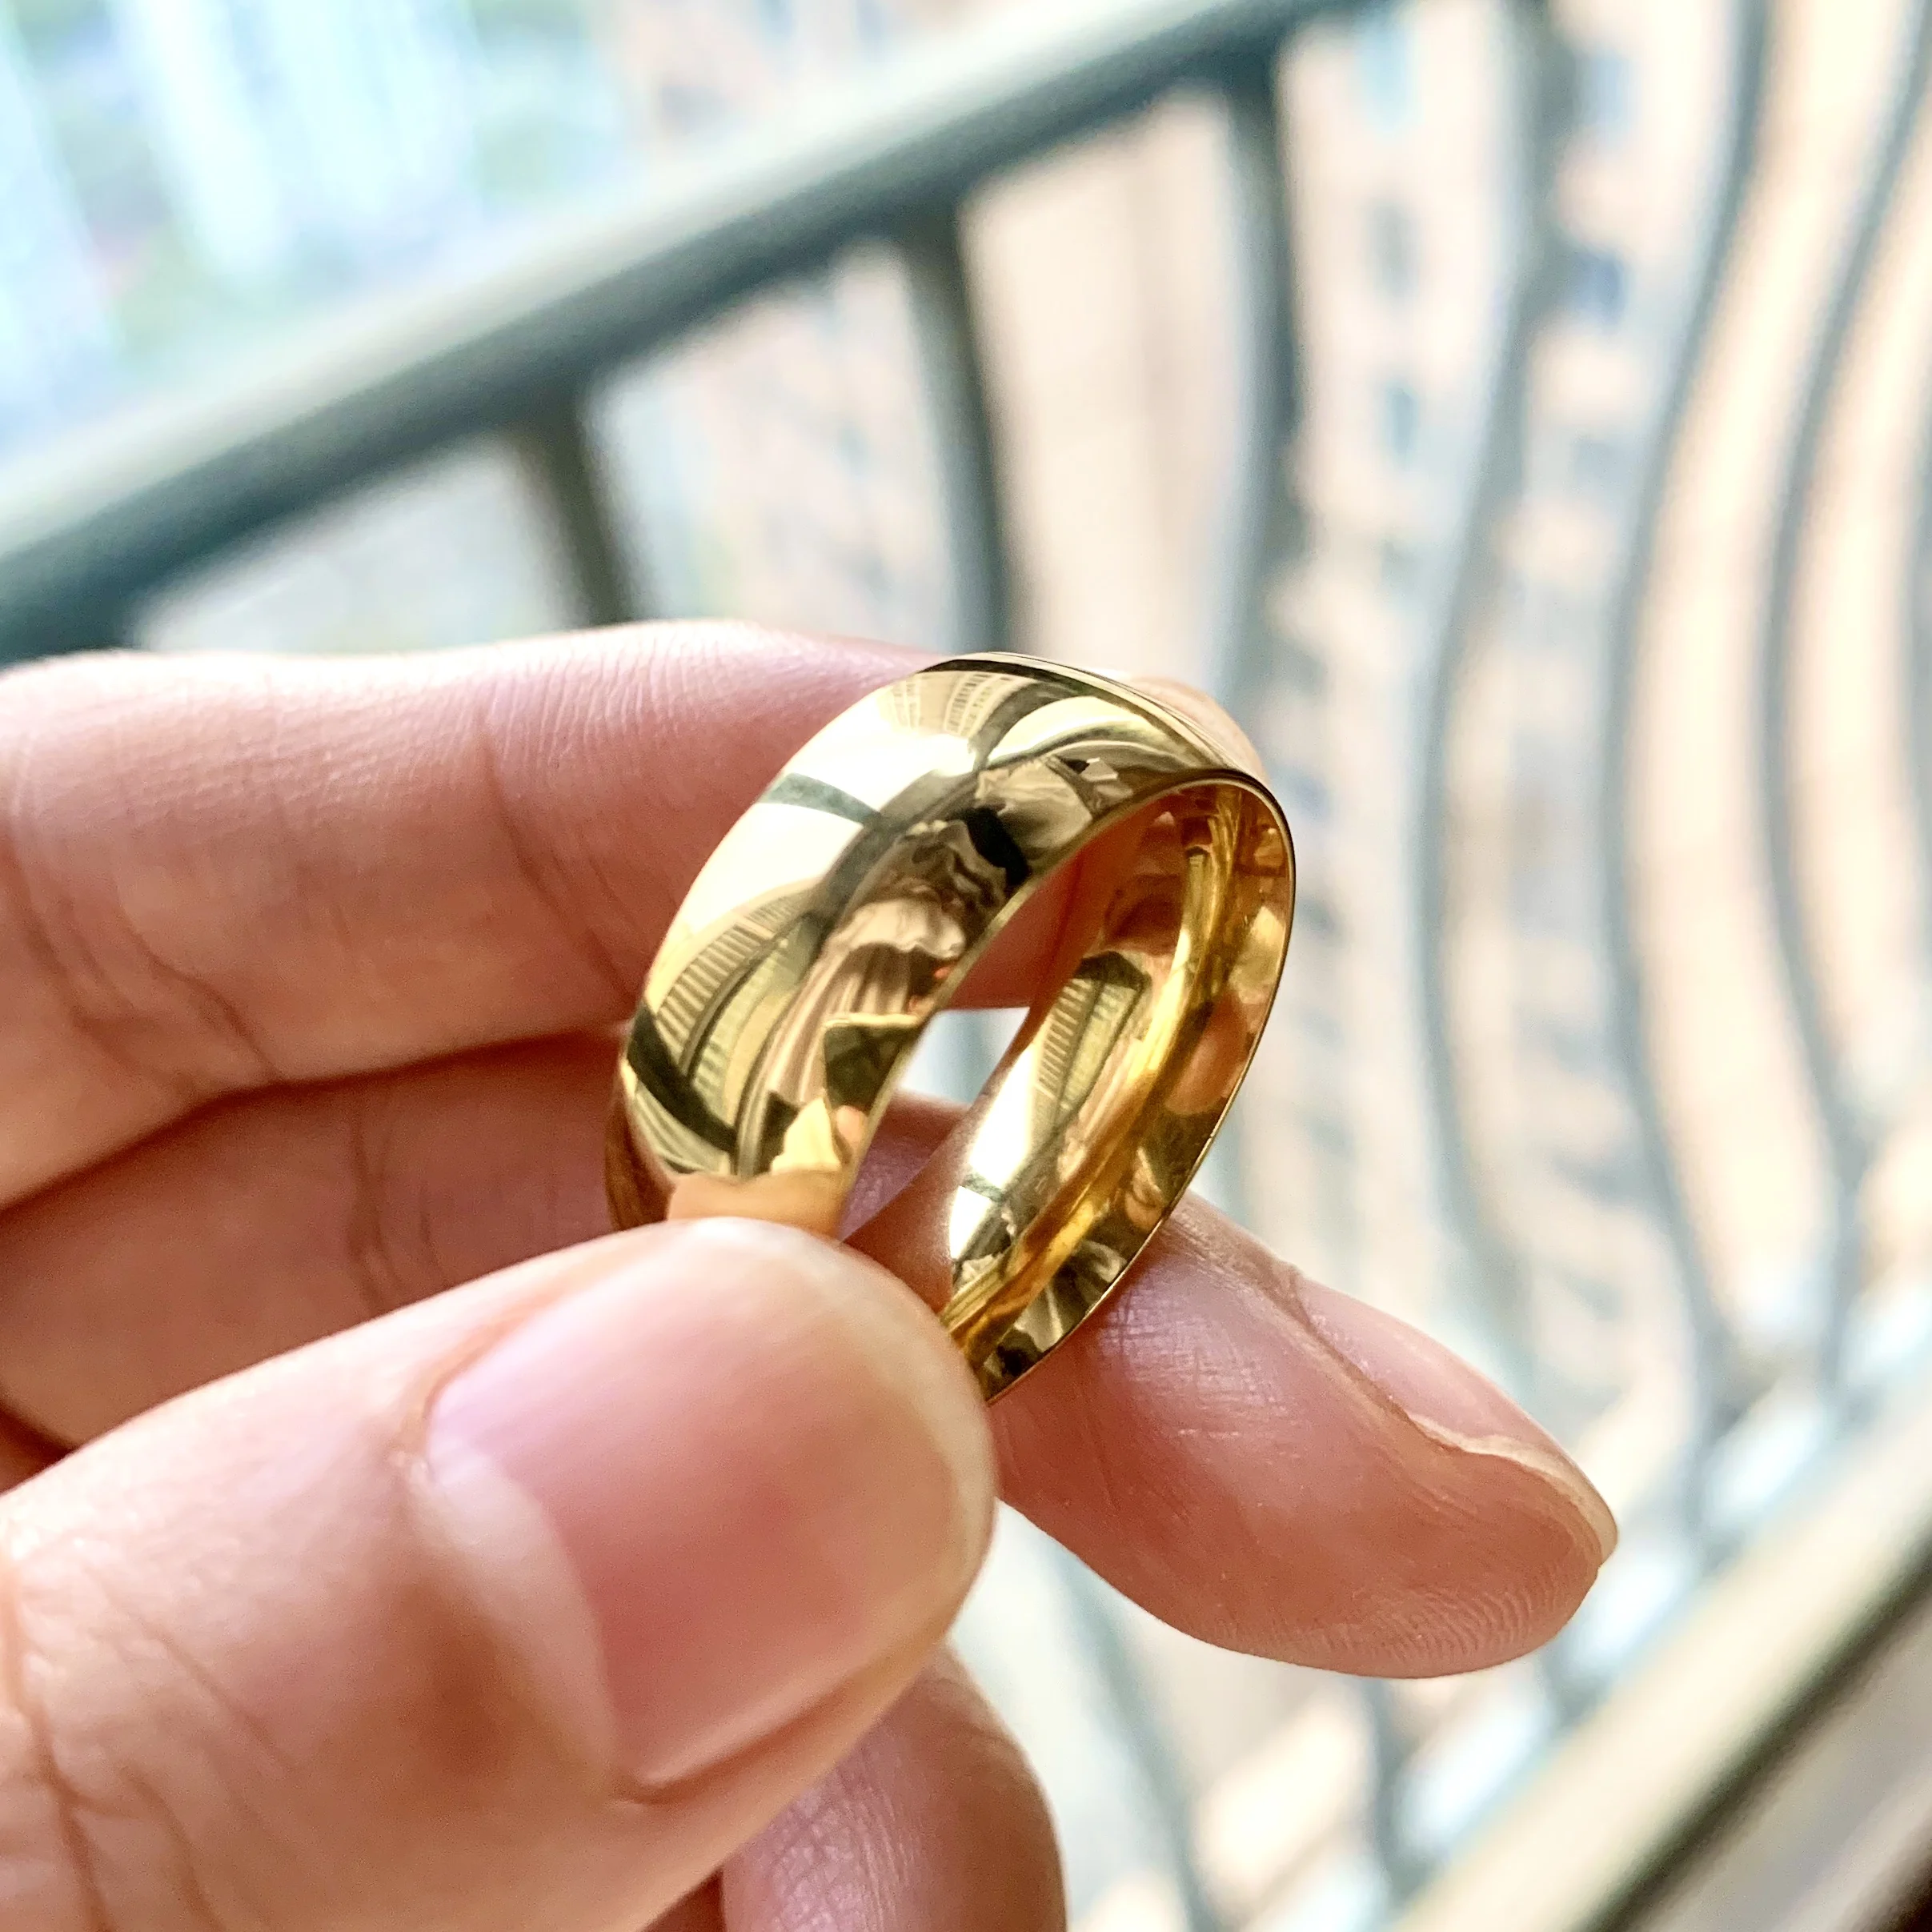 

Классическое Обручальное кольцо золотого цвета, кольца из карбида вольфрама для женщин и мужчин, обручальное кольцо, Подарочная бижутерия, купольная полированная лента с гравировкой имени